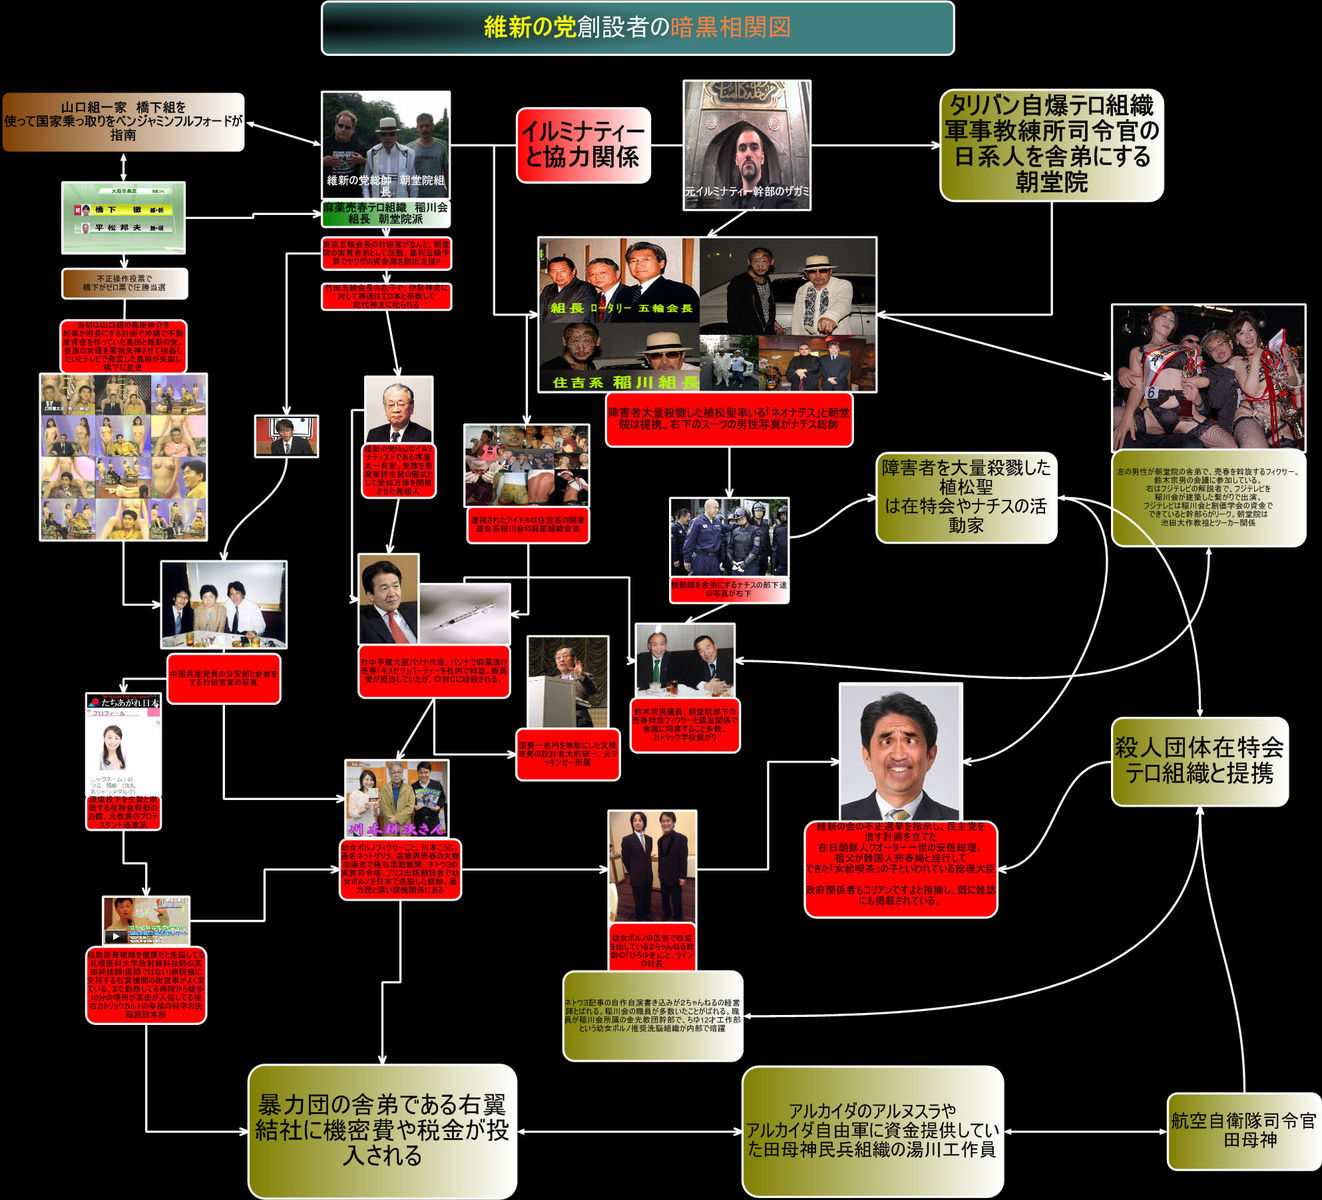 維新の党と稲川会暴力団の共謀相関図 Izimo Ssp日本のために 時事情勢報告書ブログ